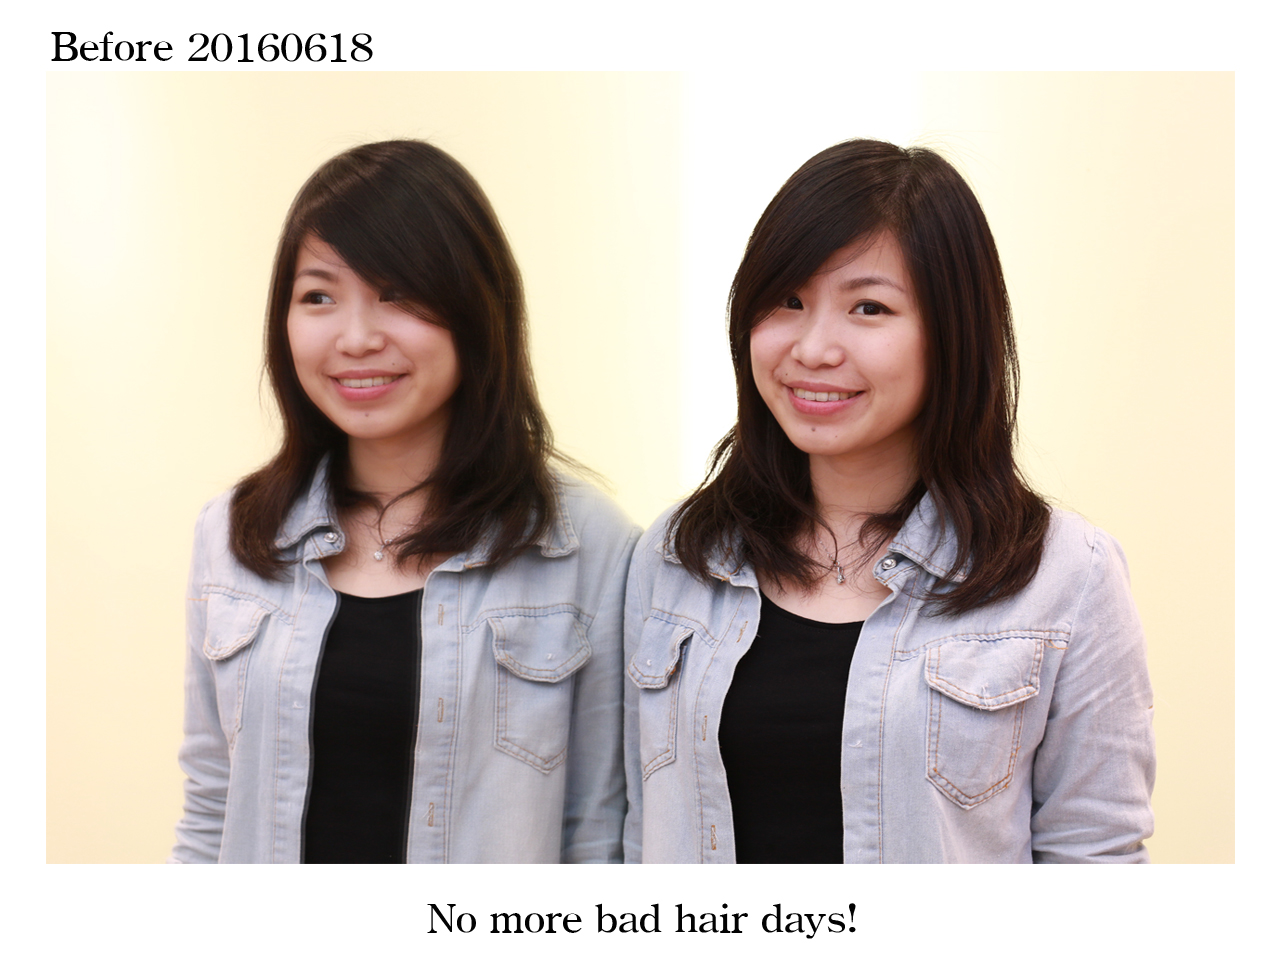 20160618張小姐剪髮前組圖1